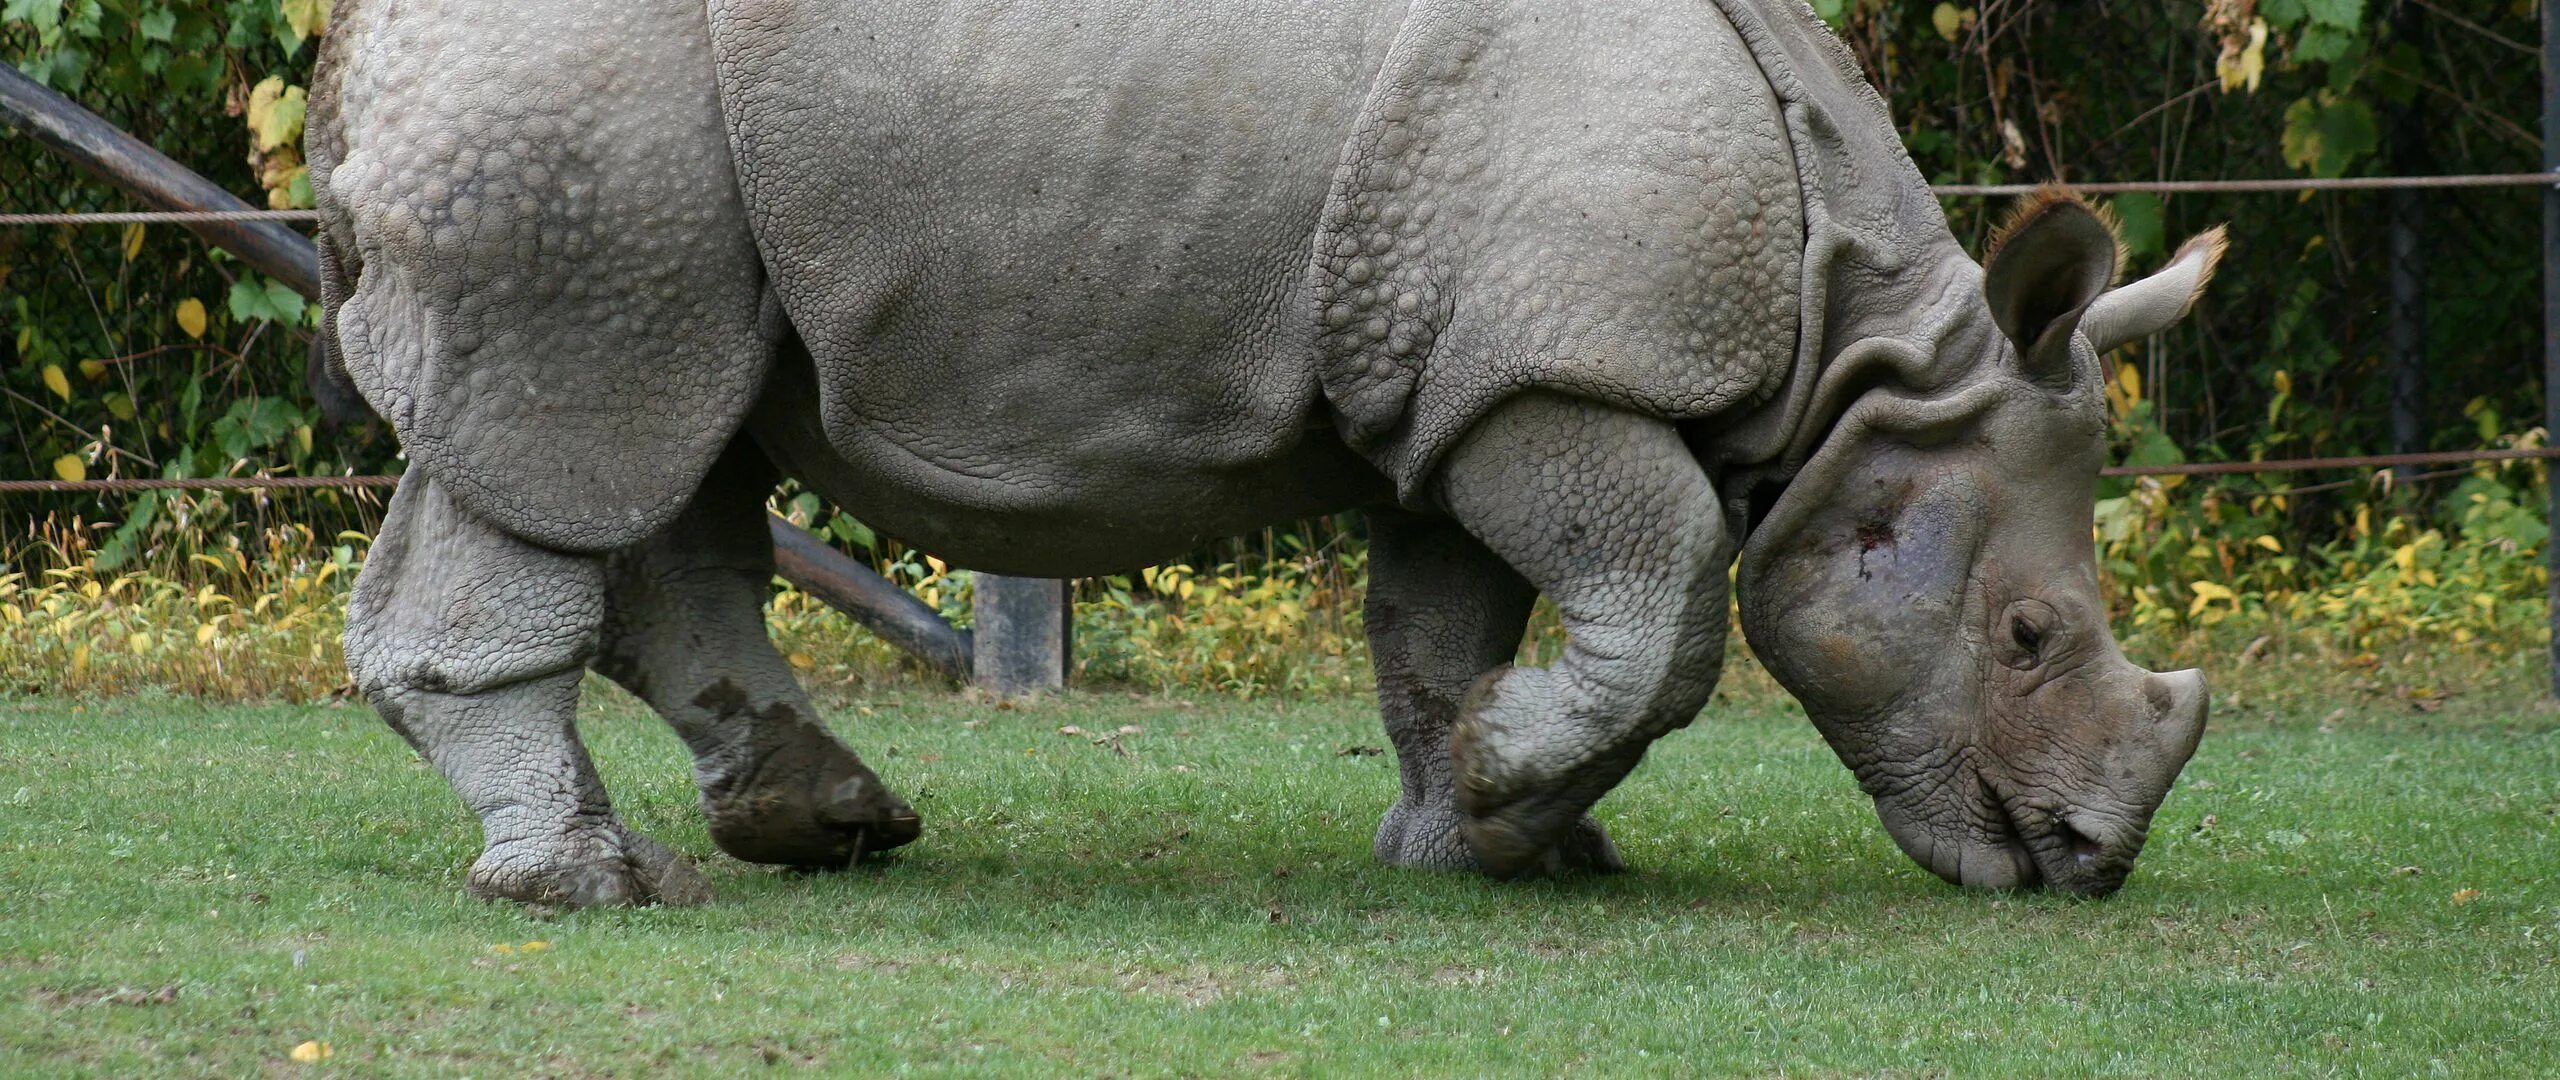 Половые органы носорога. Animals member